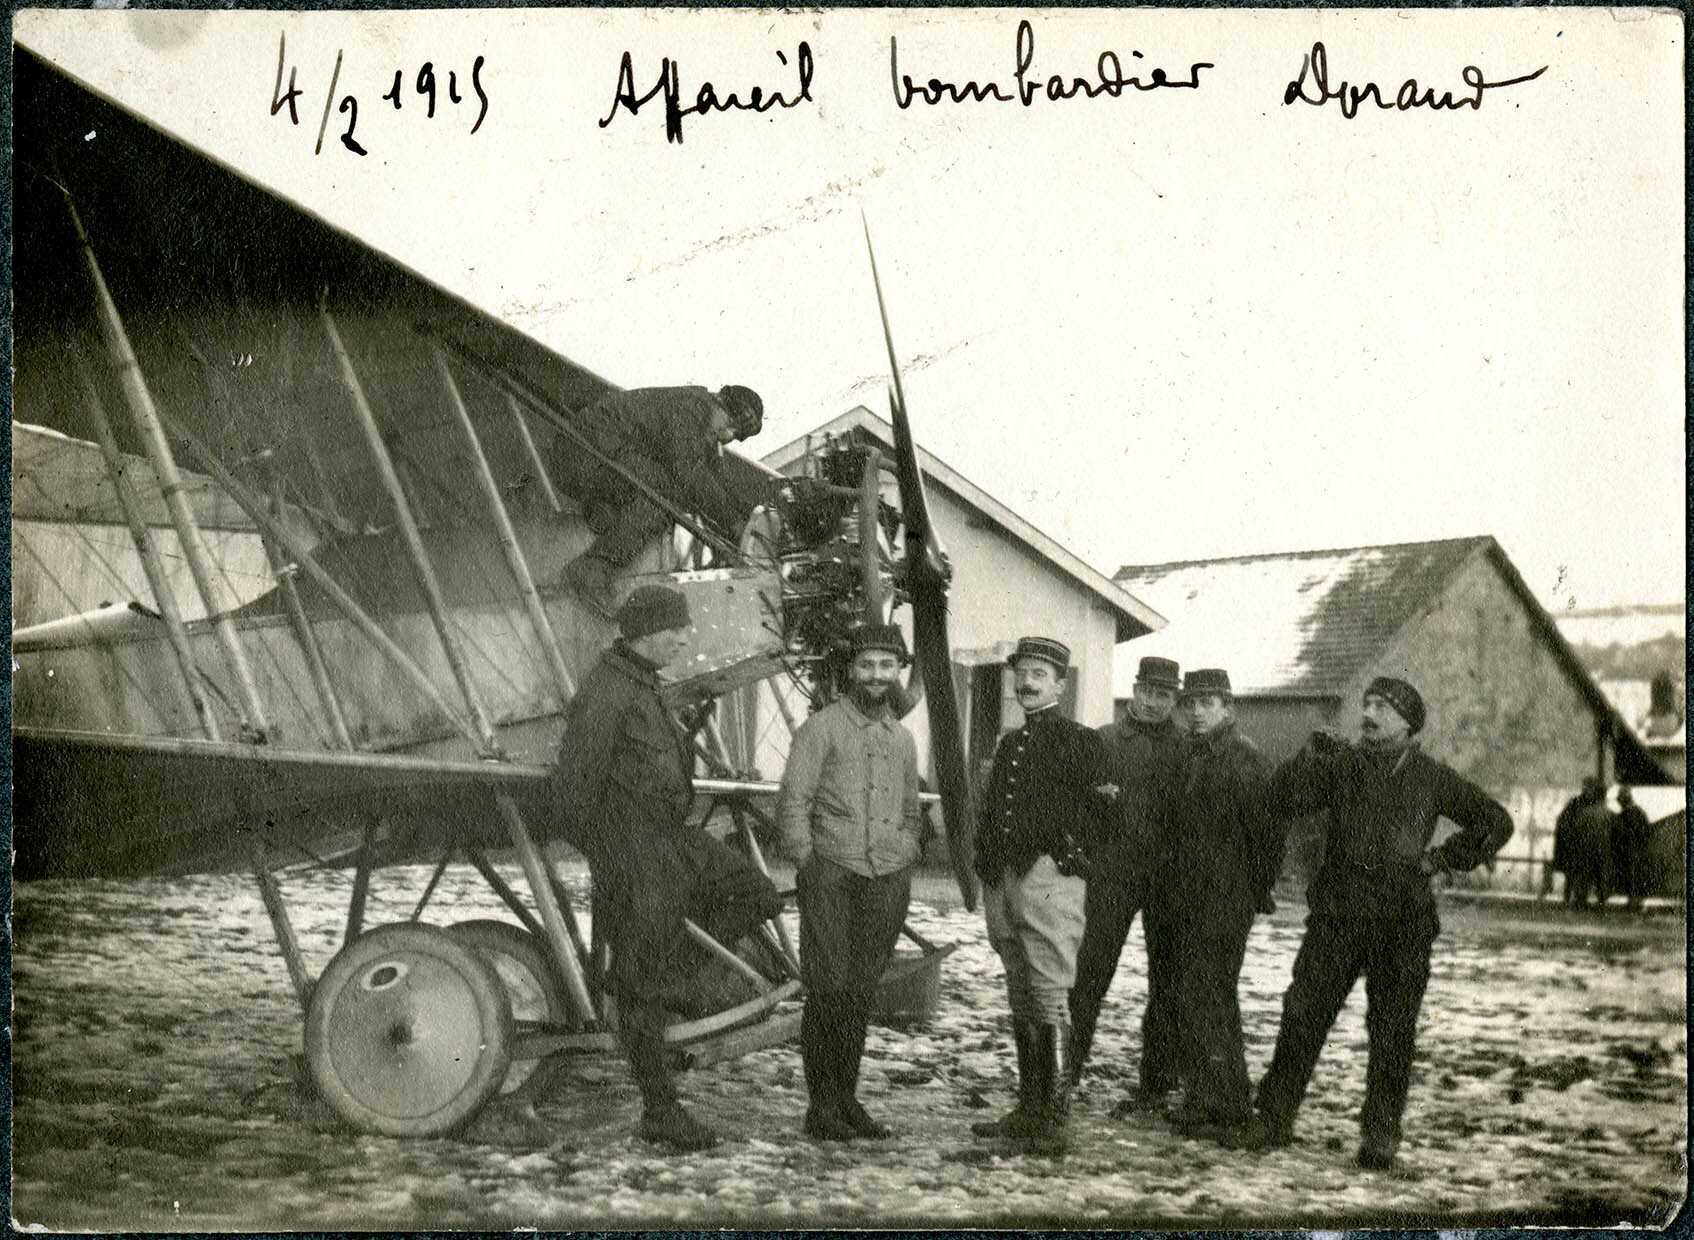 Belfort, Centre aéronautique militaire, Champ-de-Mars (Parc-à-Ballons), un groupe de militaires devant un avion de reconnaissance français, le 4 février 1915.